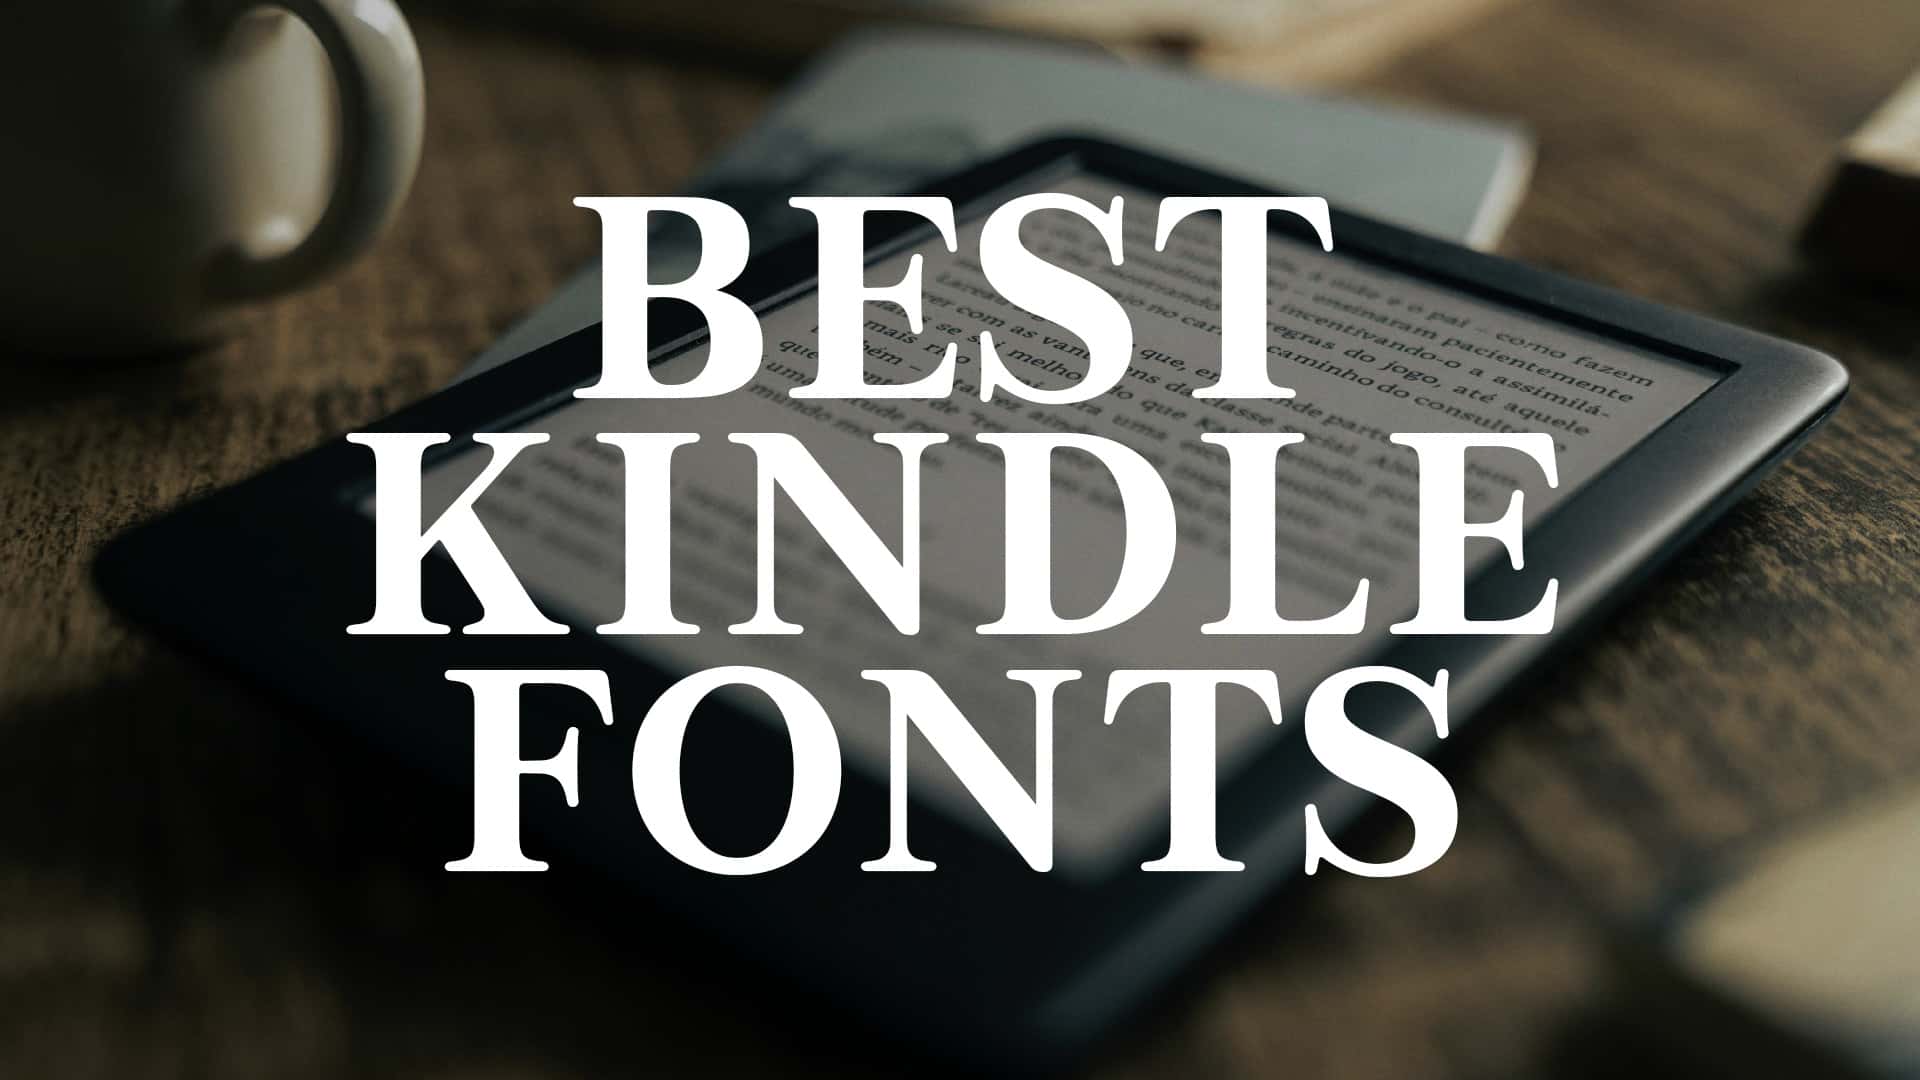 Best Kindle Font